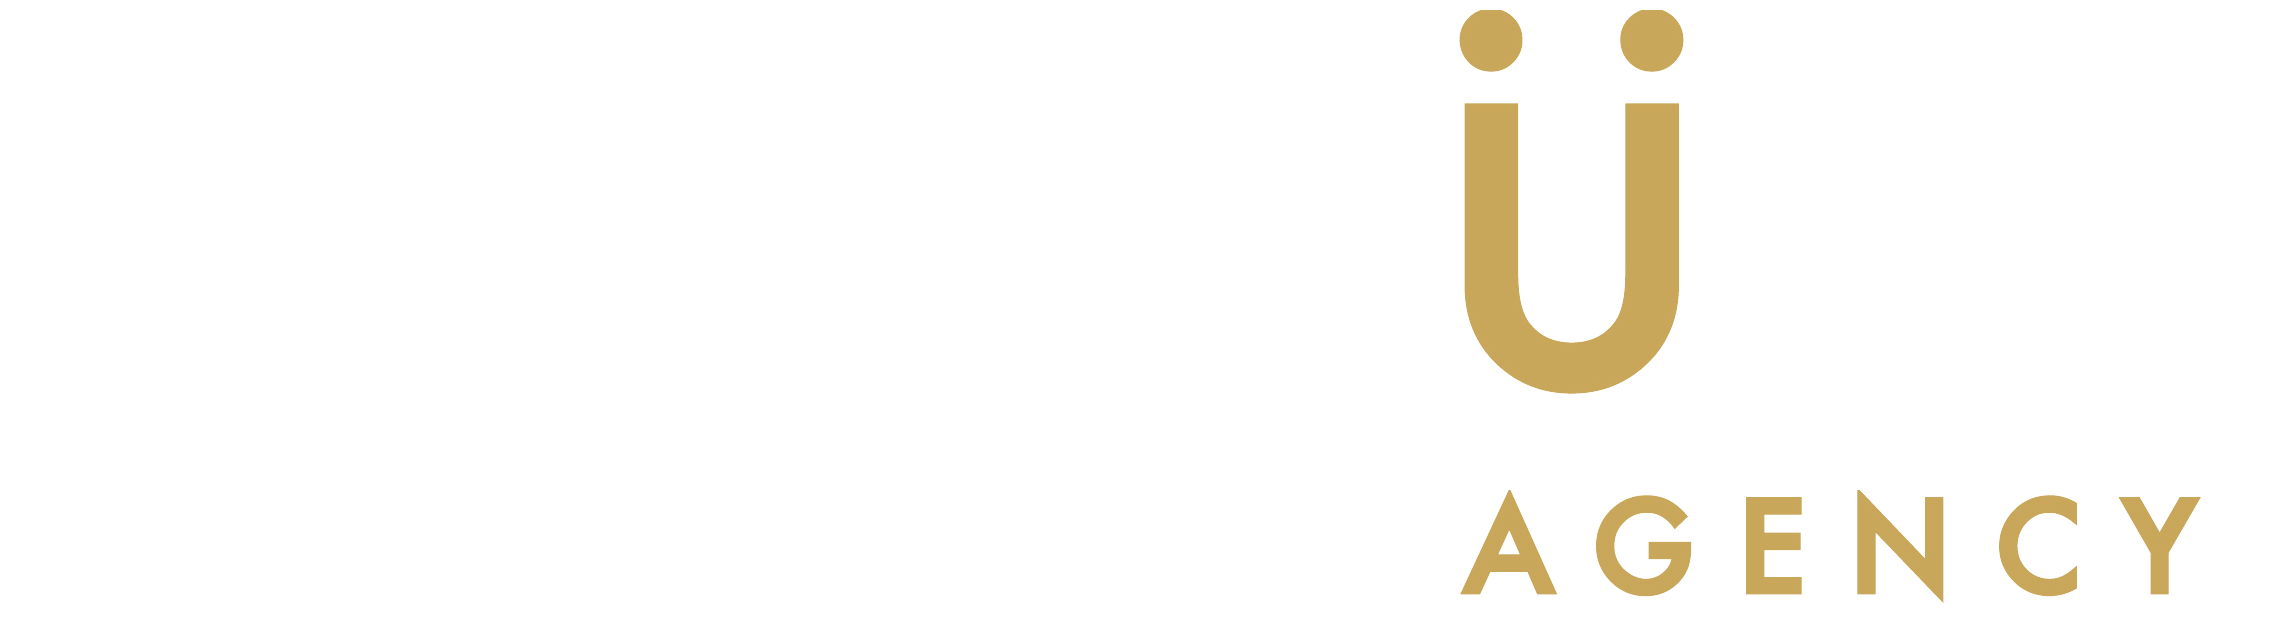 Pursuit Agency logo